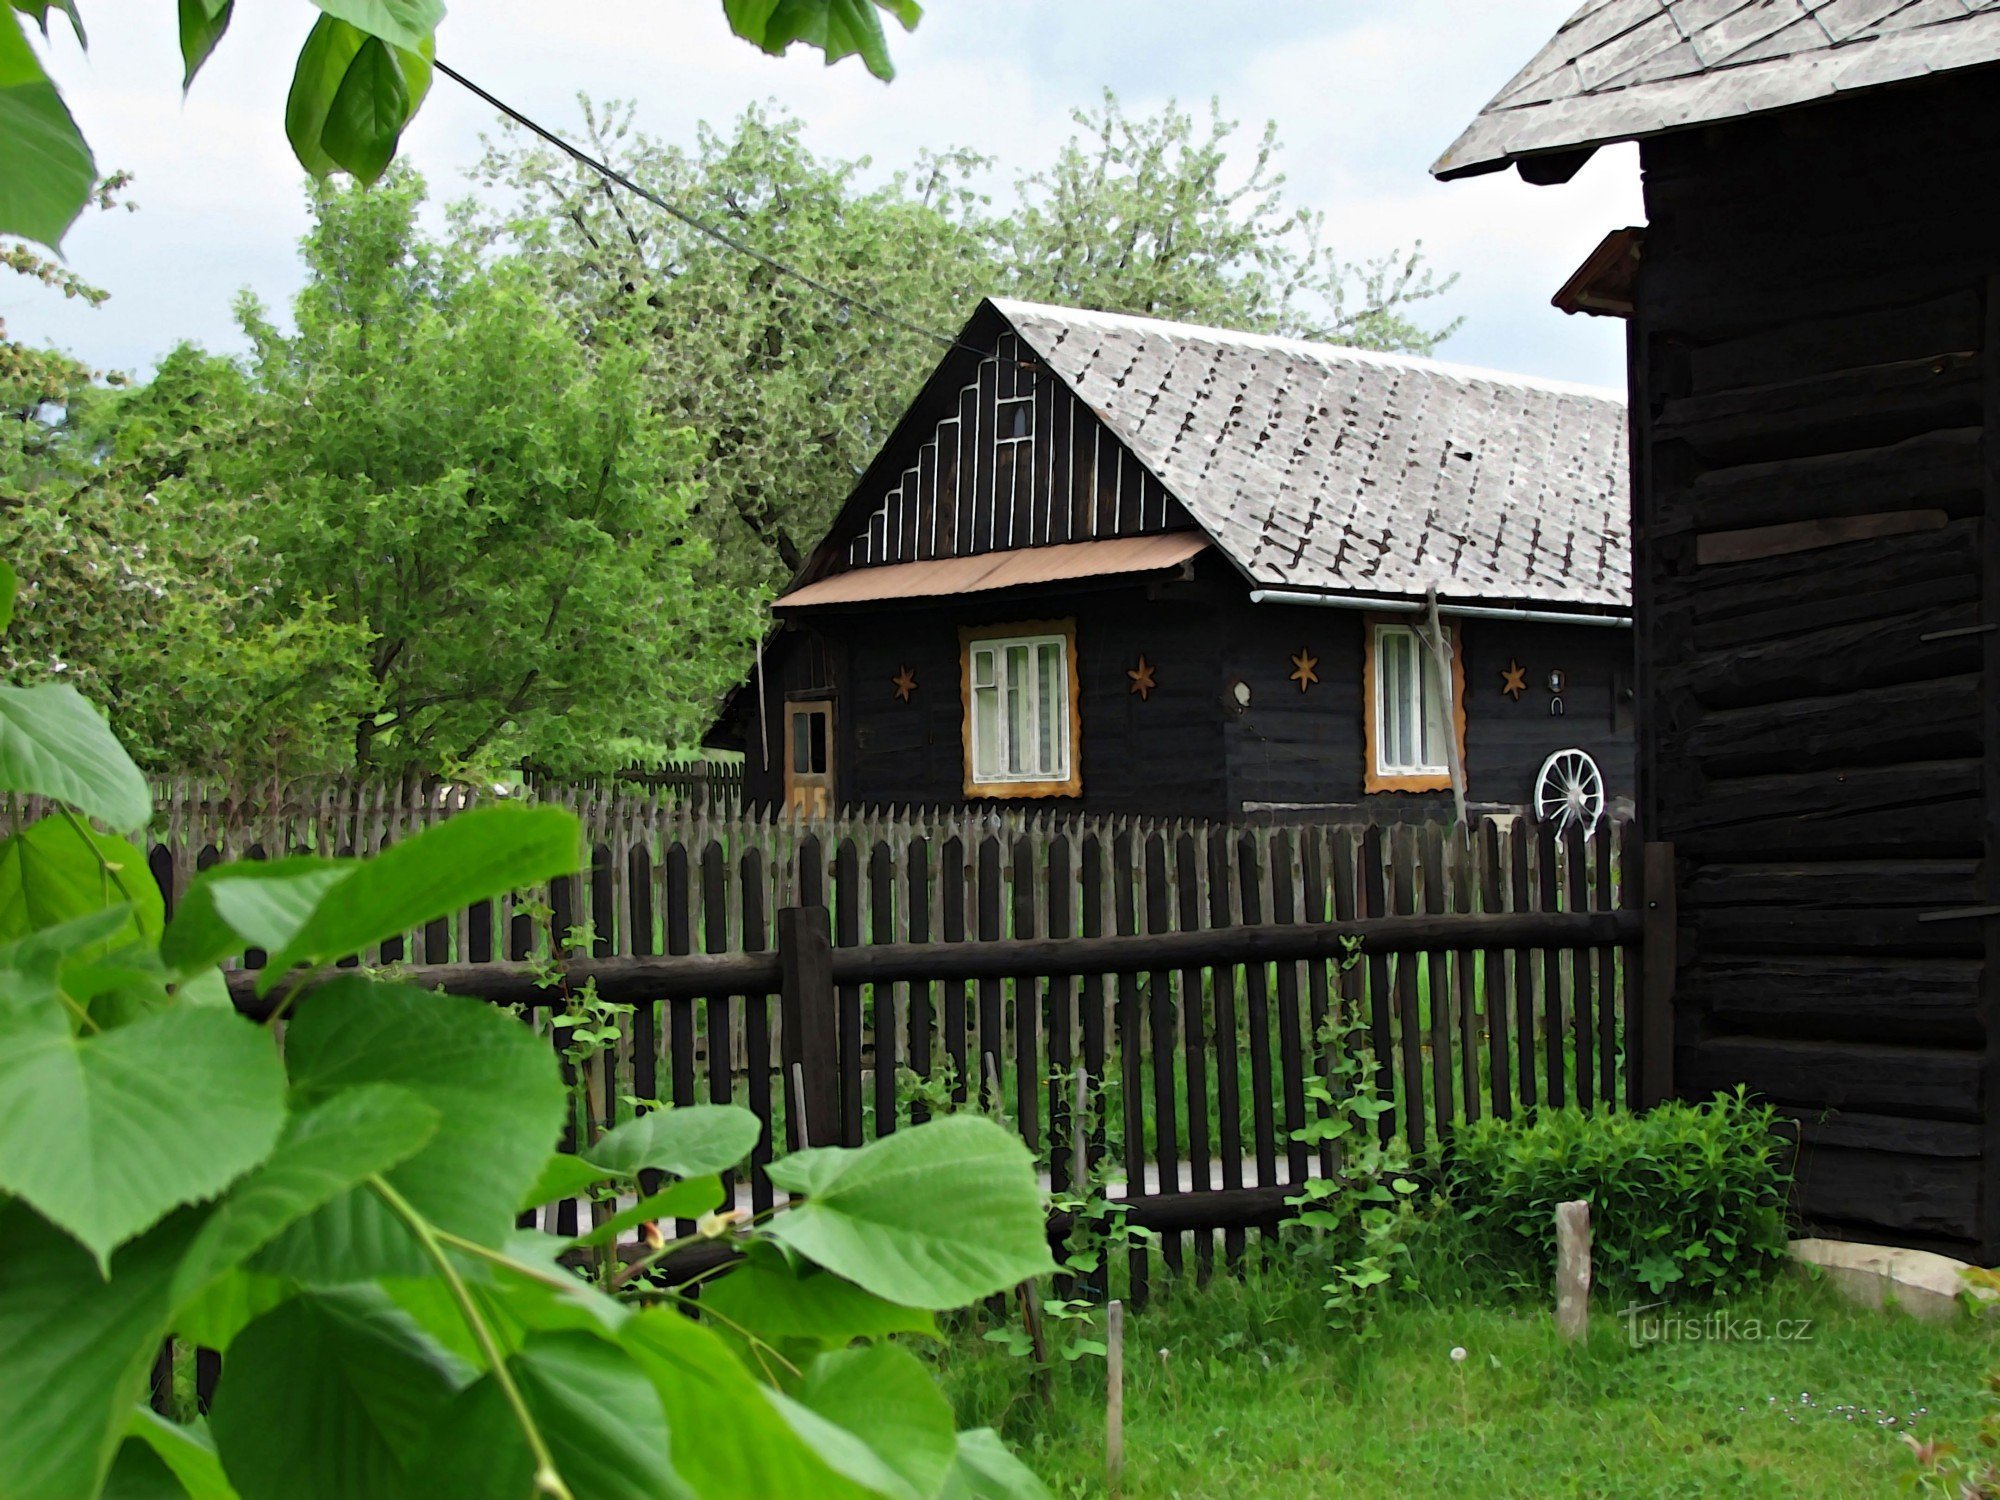 Μια βόλτα στο χωριό Pozděchov της Βλαχίας